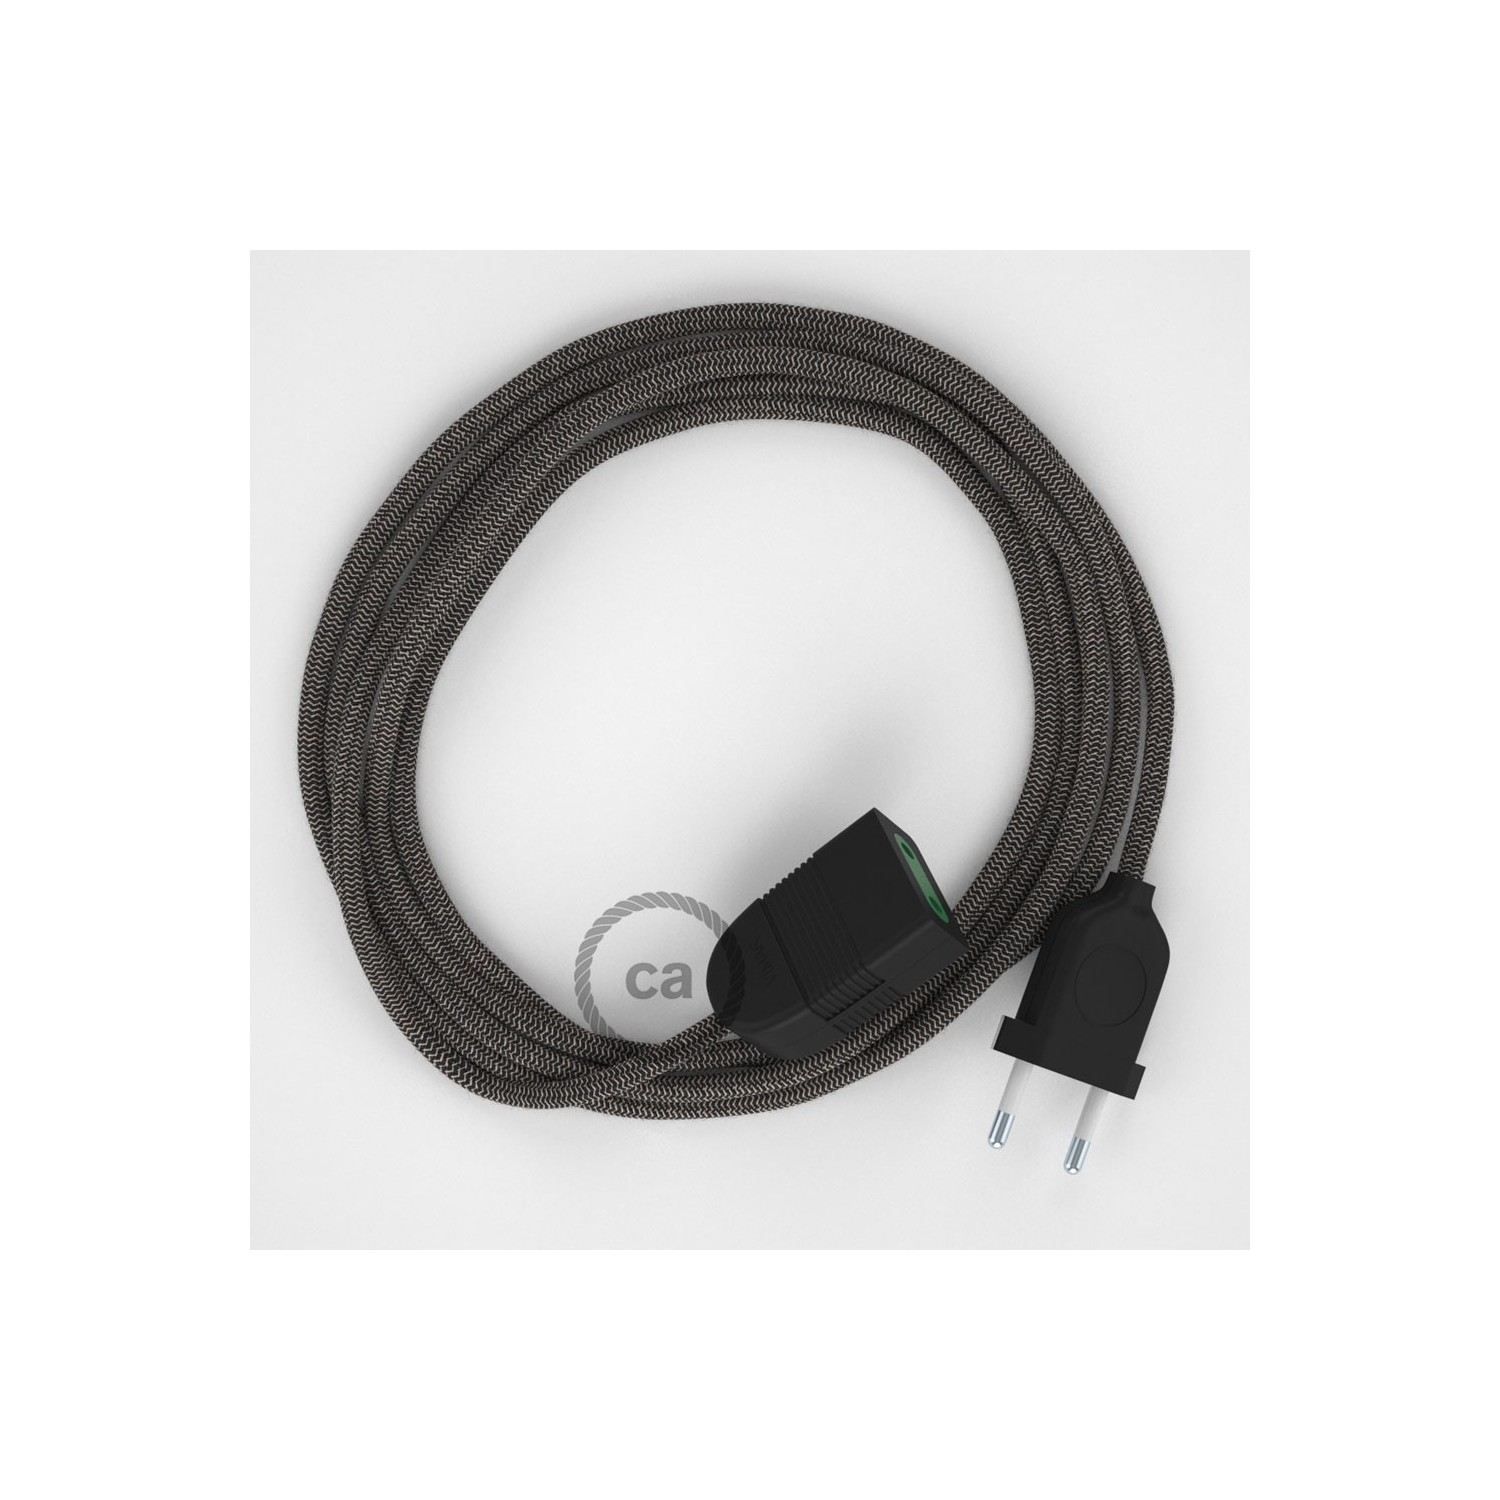 Produžni kabel za napajanje (2P 10A) Cik-Cak, Antracit Pamuk i Prirodni Lan RD74 - Made in Italy